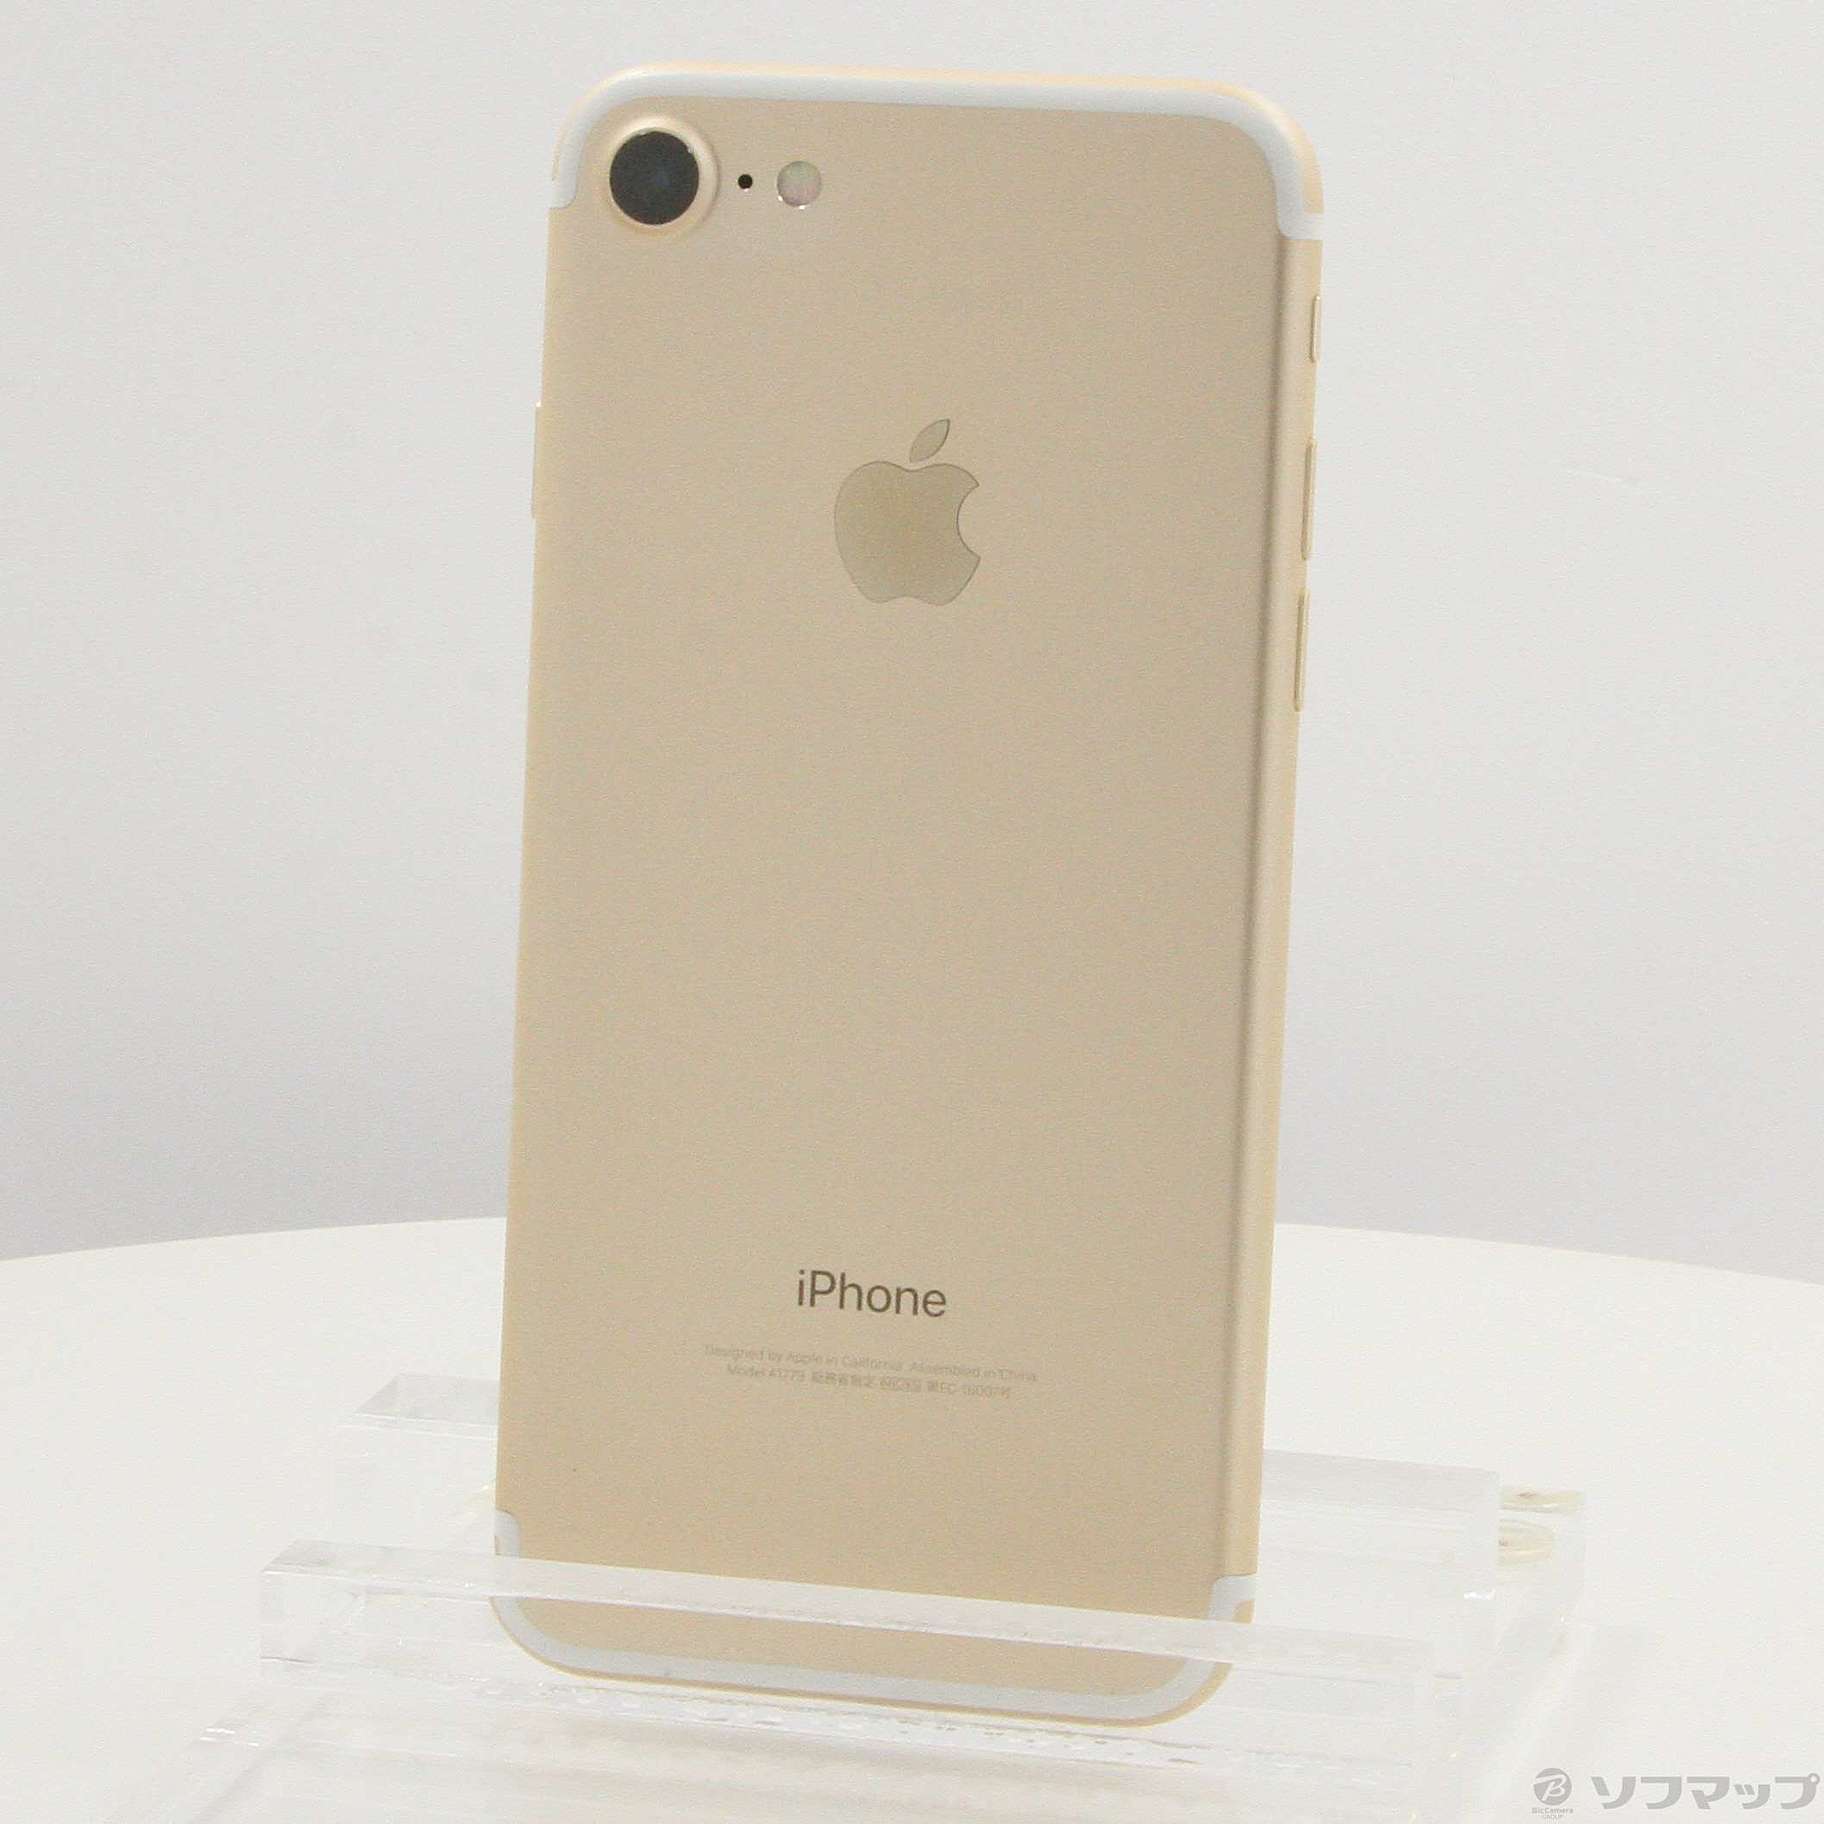 iPhone Gold 128 GB SIMフリー